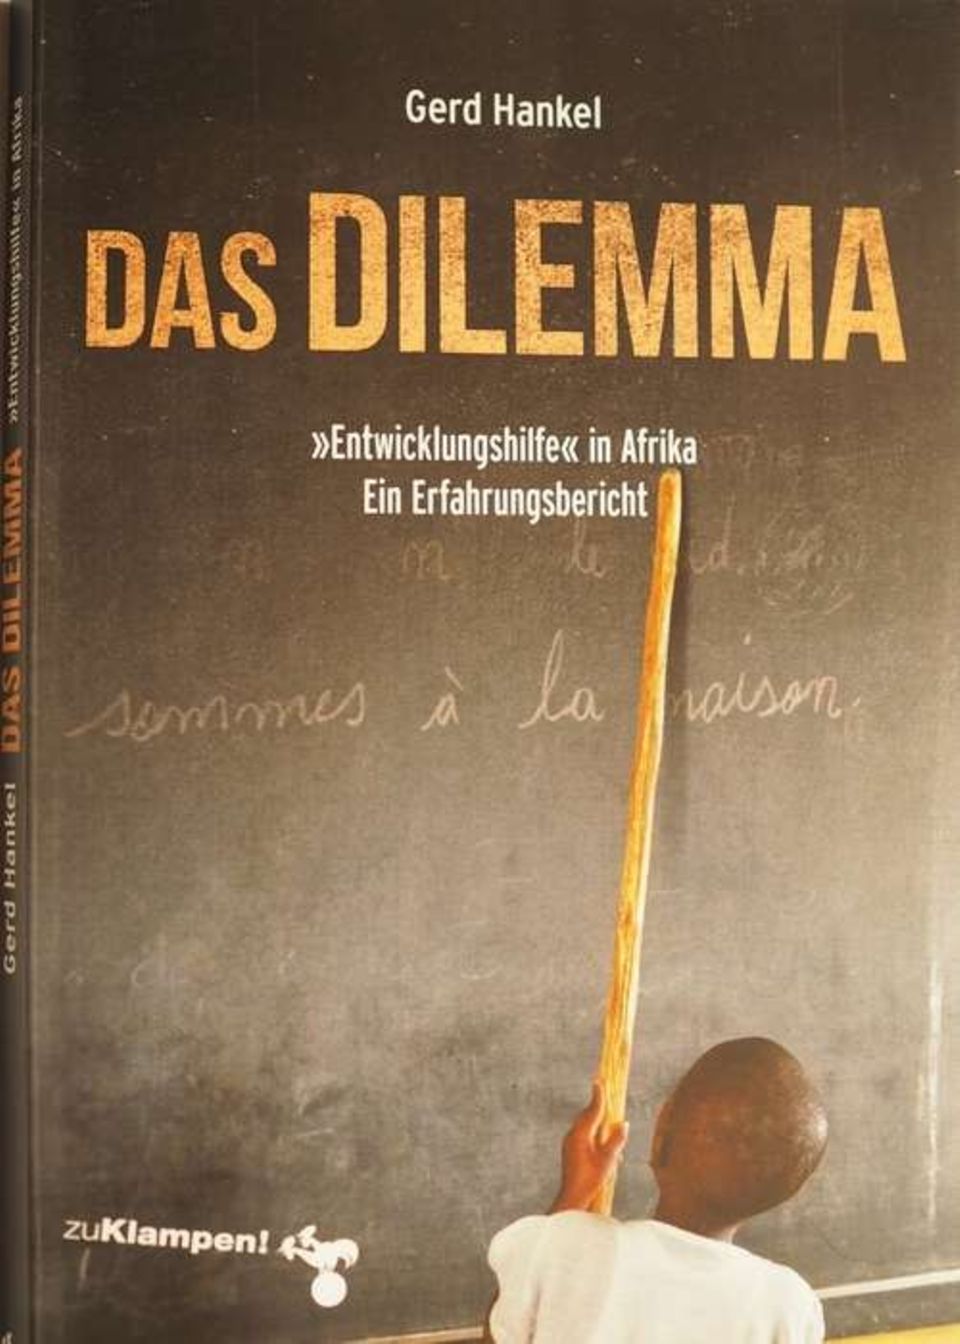 Gerd Hankel  Das Dilemma. "Entwicklungshilfe" in Afrika. Ein Erfahrungsbericht  Taschenbuch, zuKlampen Verlag 2020  148 S., ISBN 978-3-86674-607-7